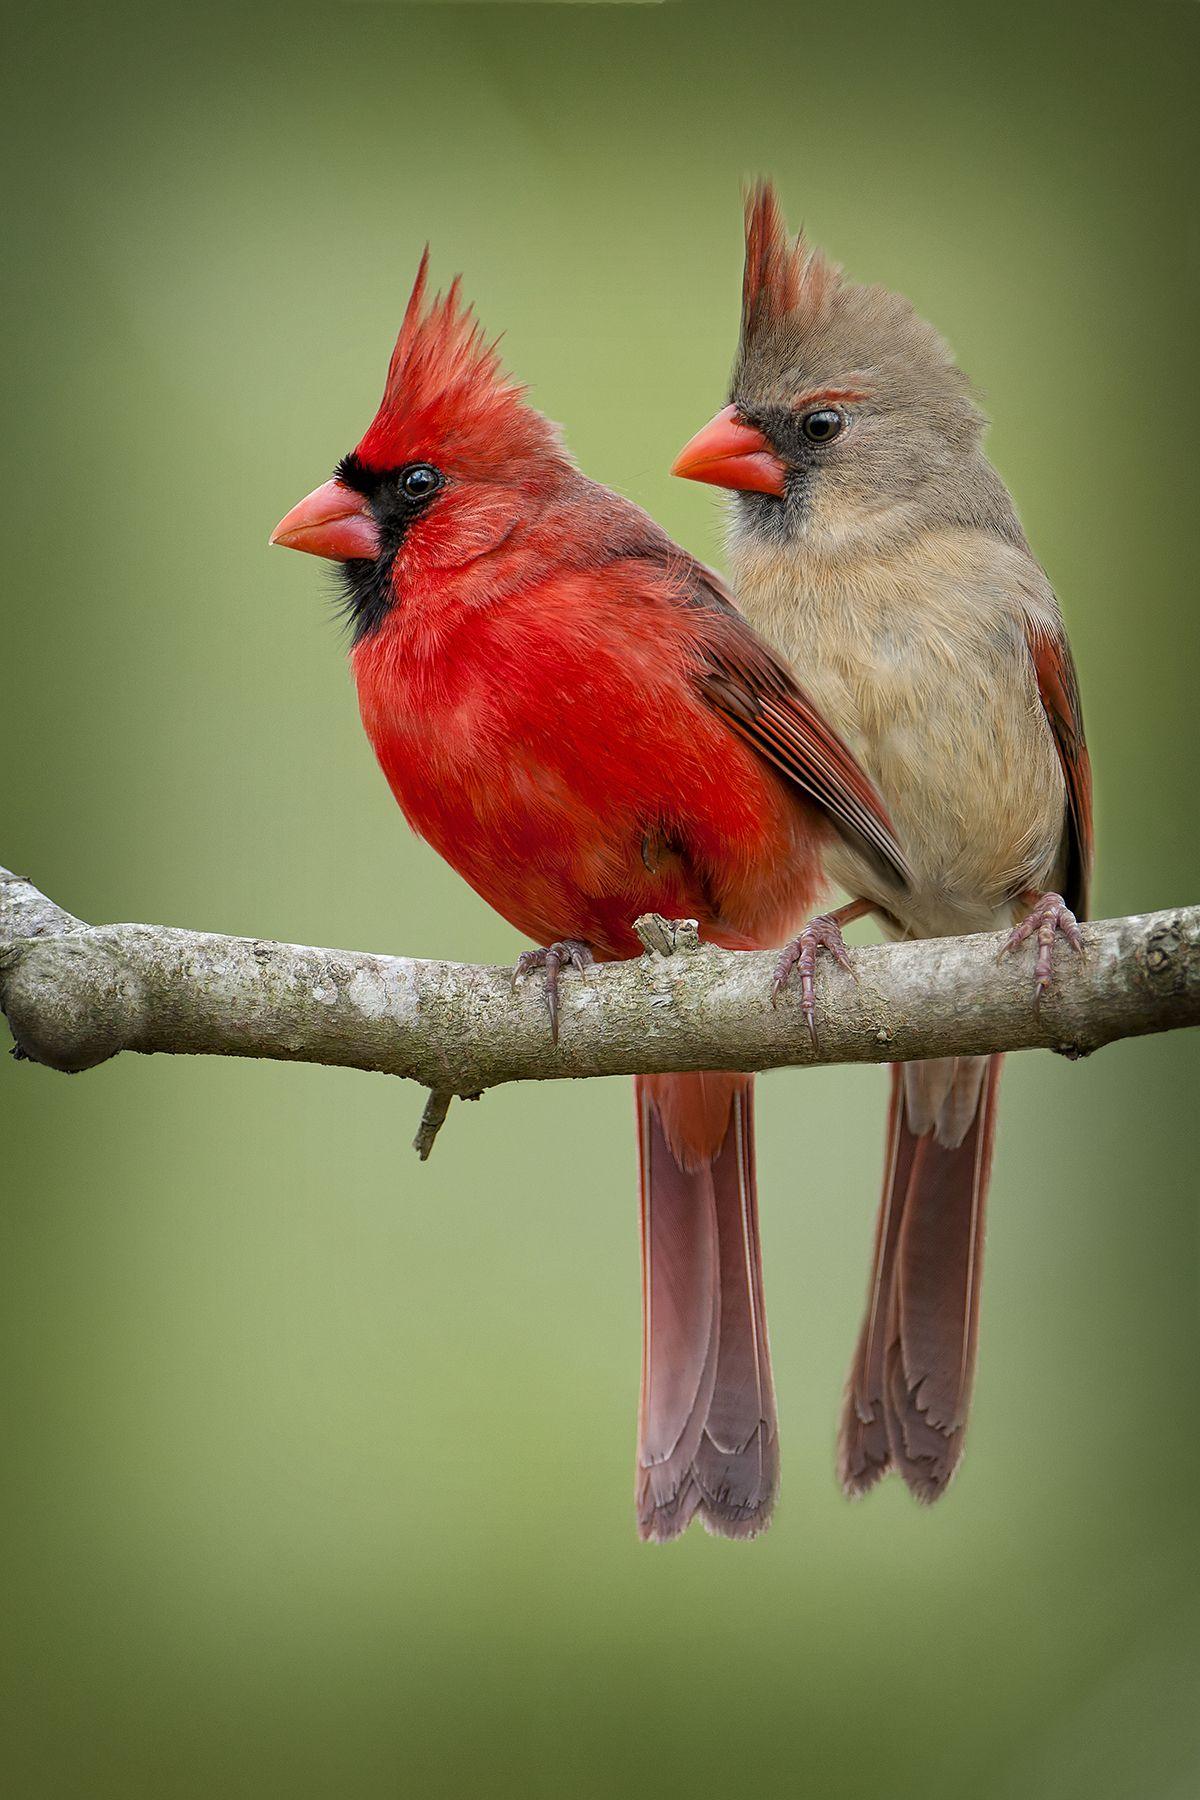 female cardinals birds picture - Red Cardinal. Cardinal birds